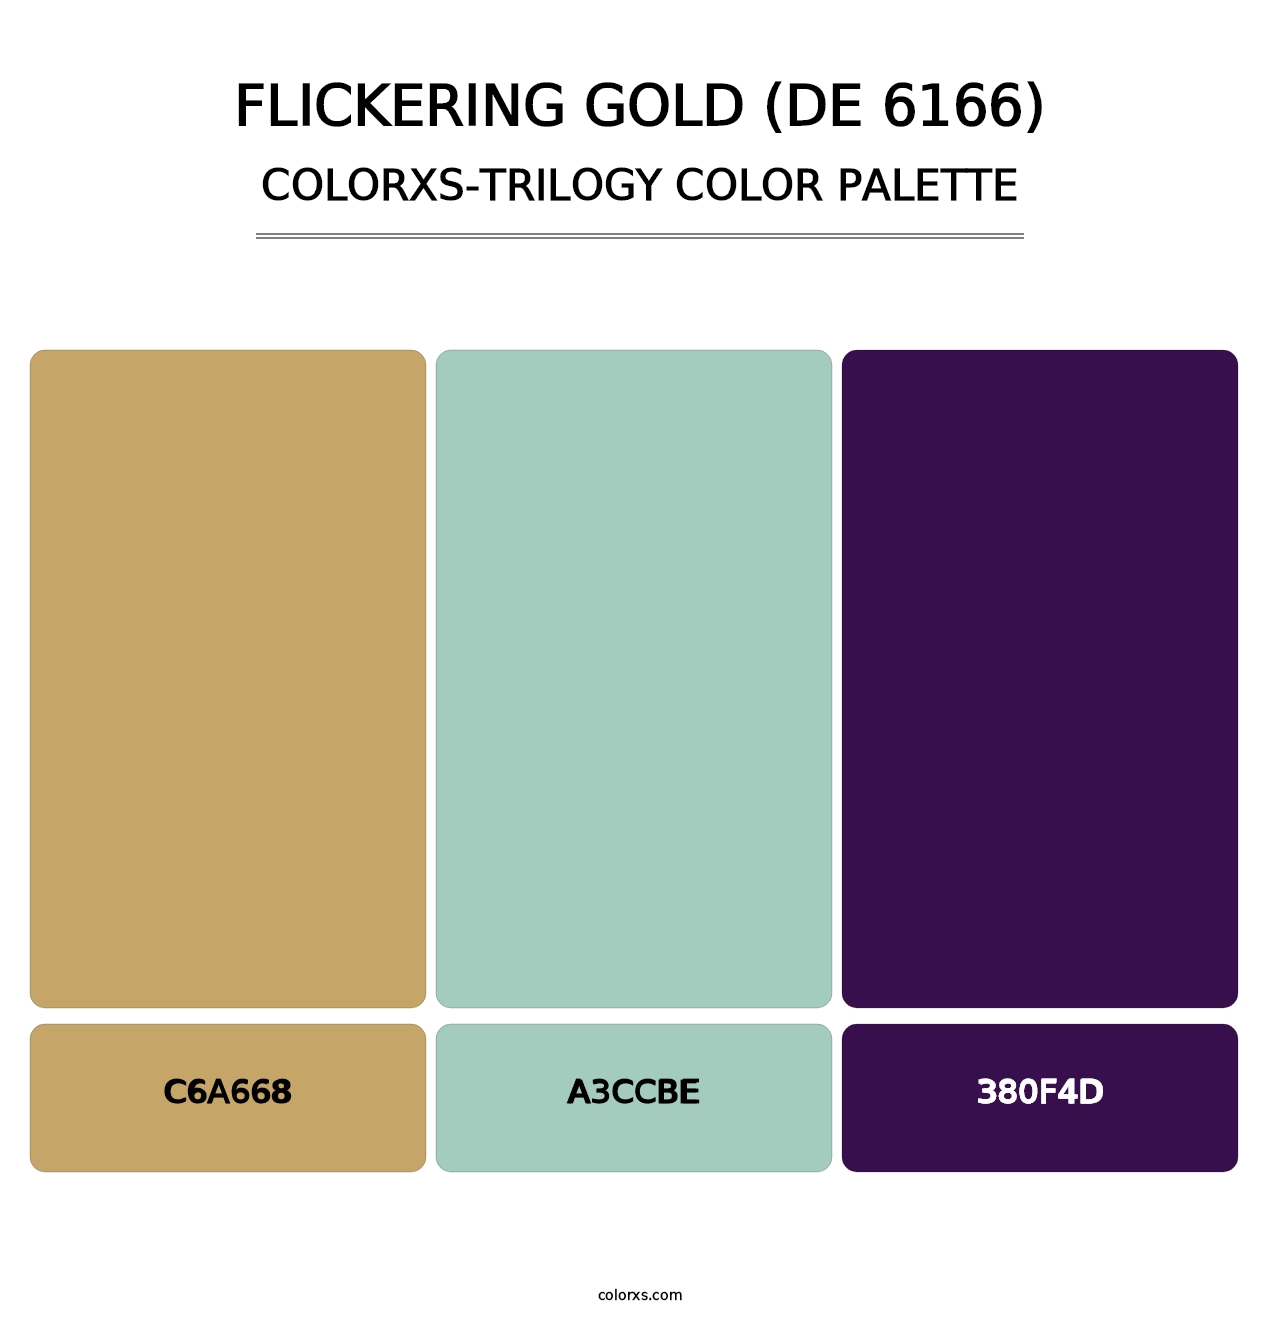 Flickering Gold (DE 6166) - Colorxs Trilogy Palette